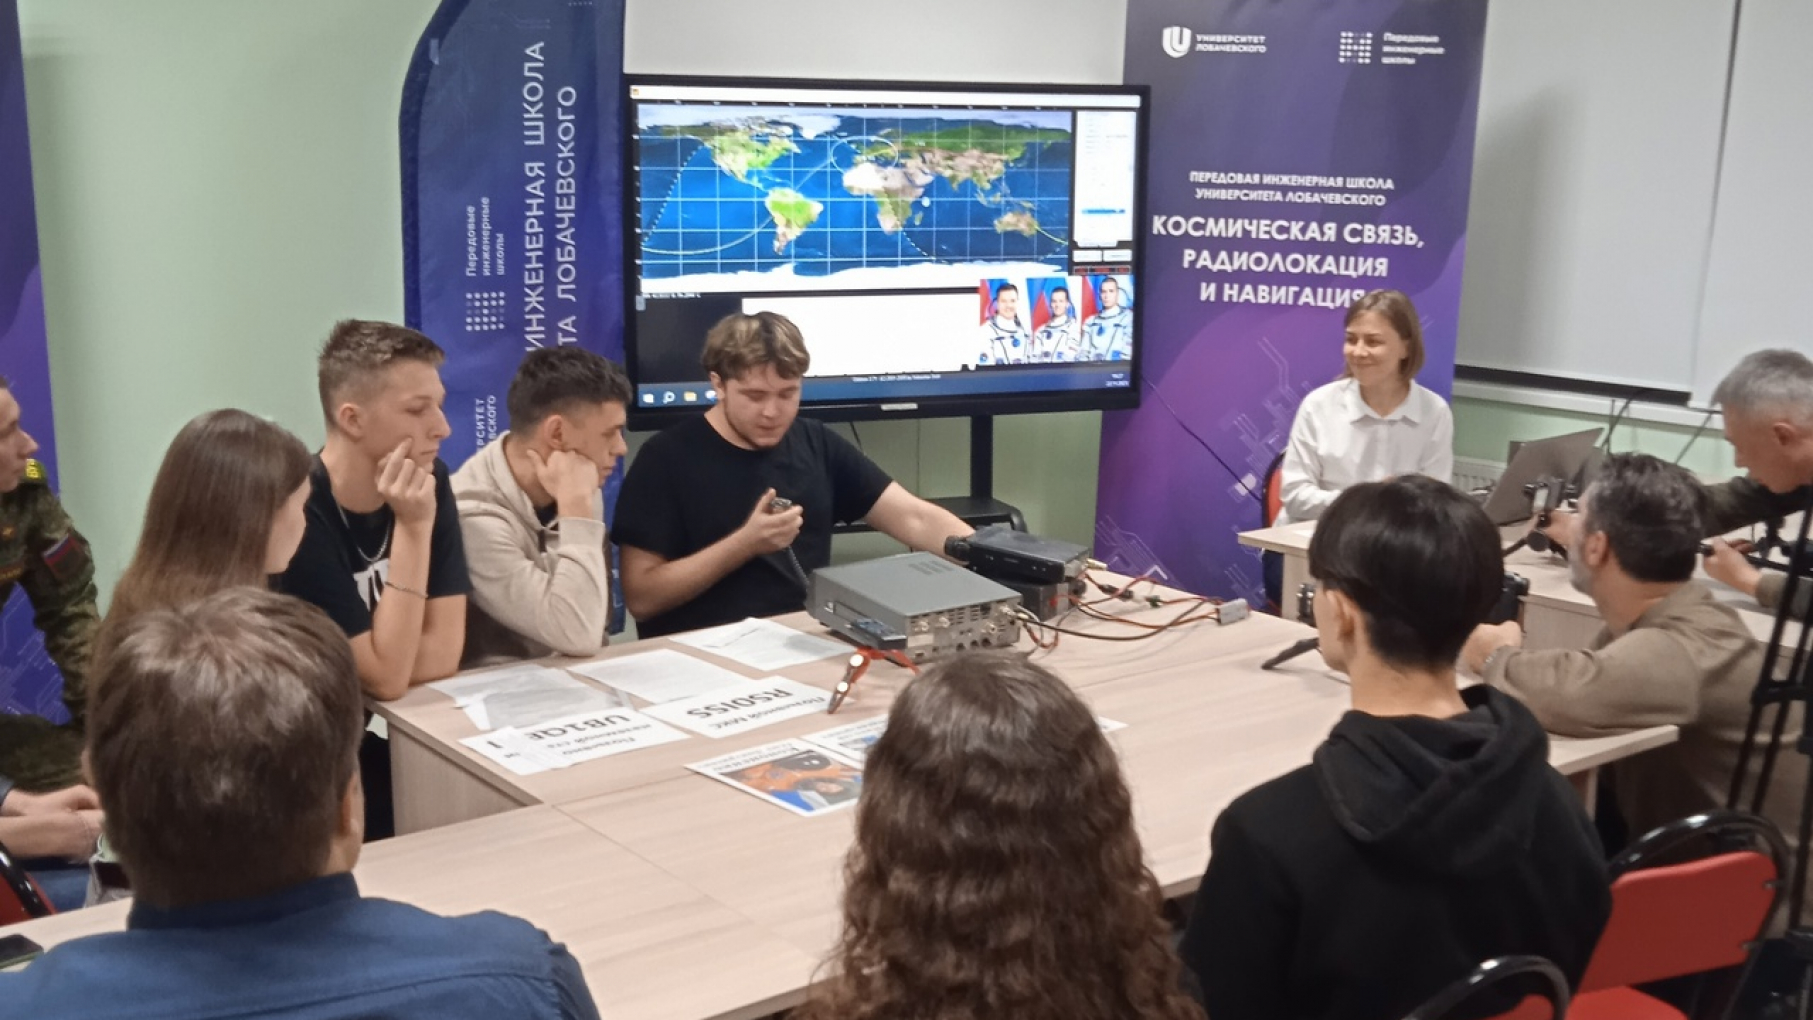 Нижегородские студенты Университета Лобачевского приняли участие в сеансе радиосвязи с космонавтами МКС